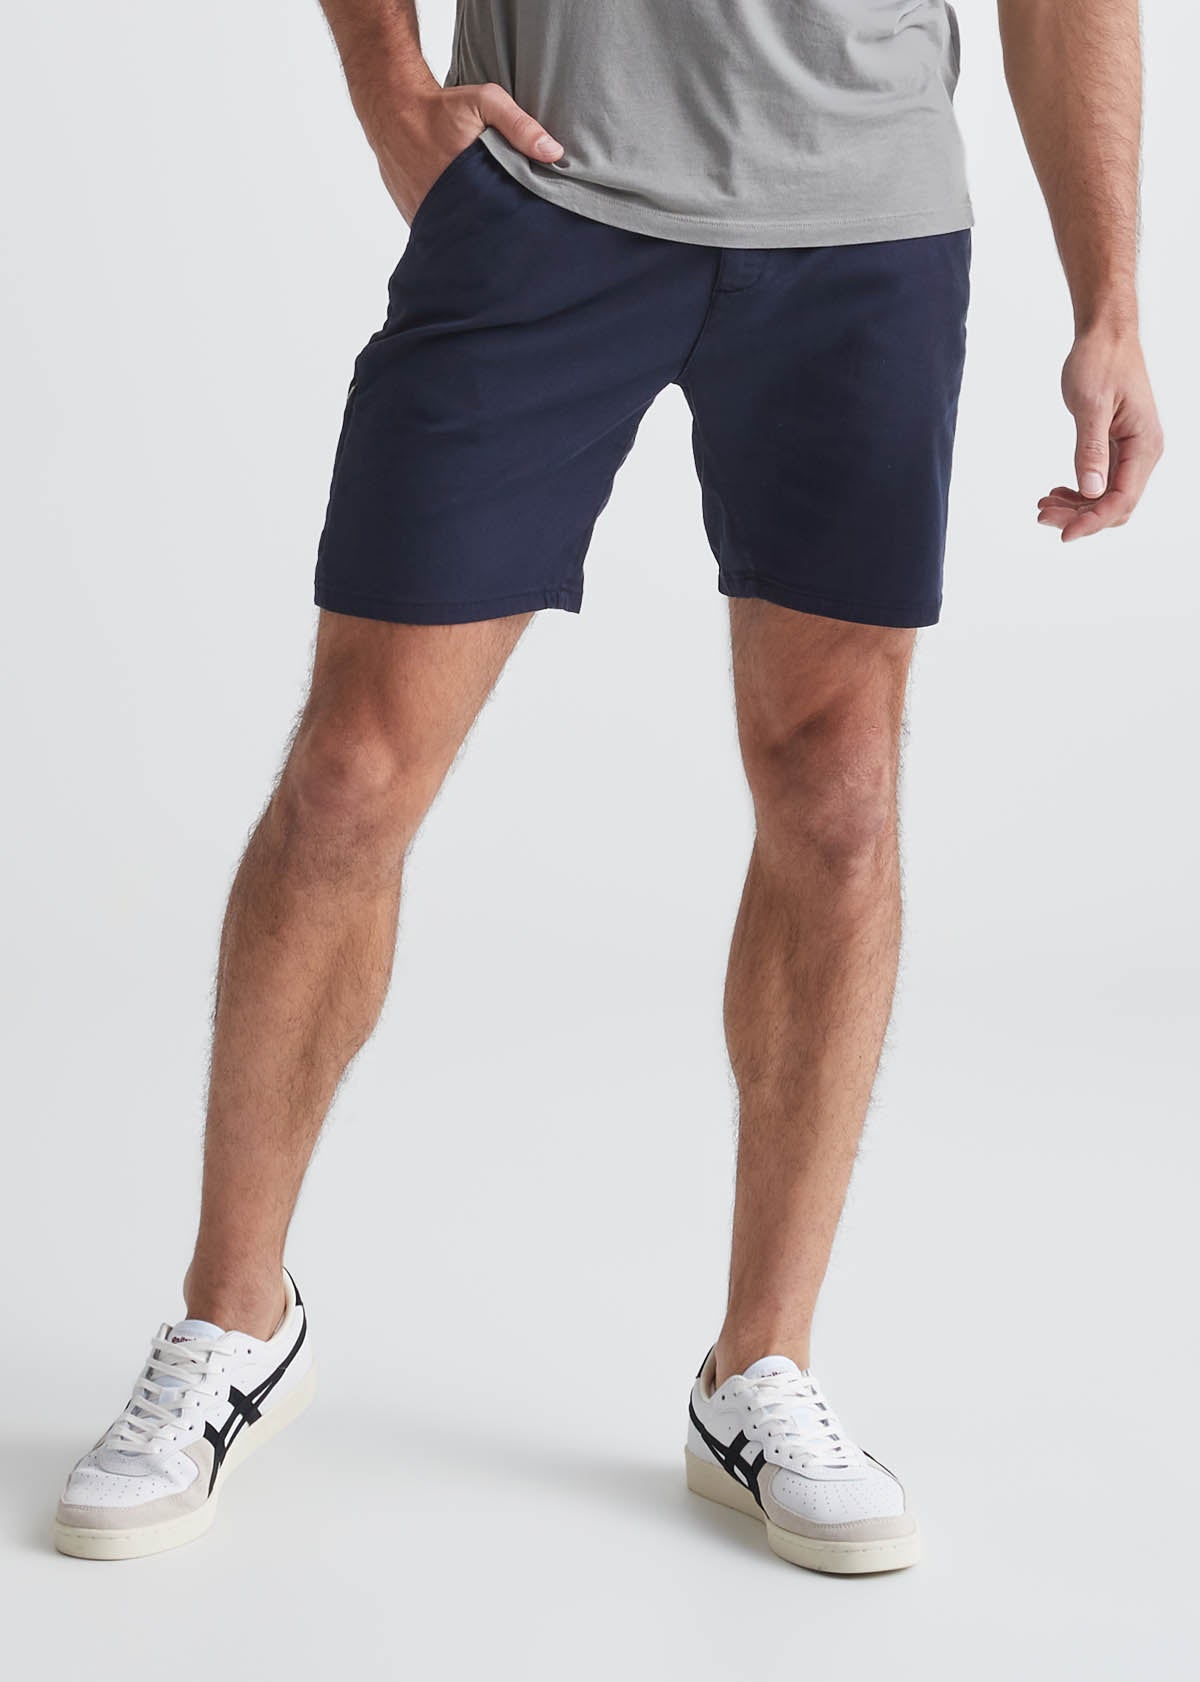 mens dark blue slim fit lightweight shorts front 7" inseam